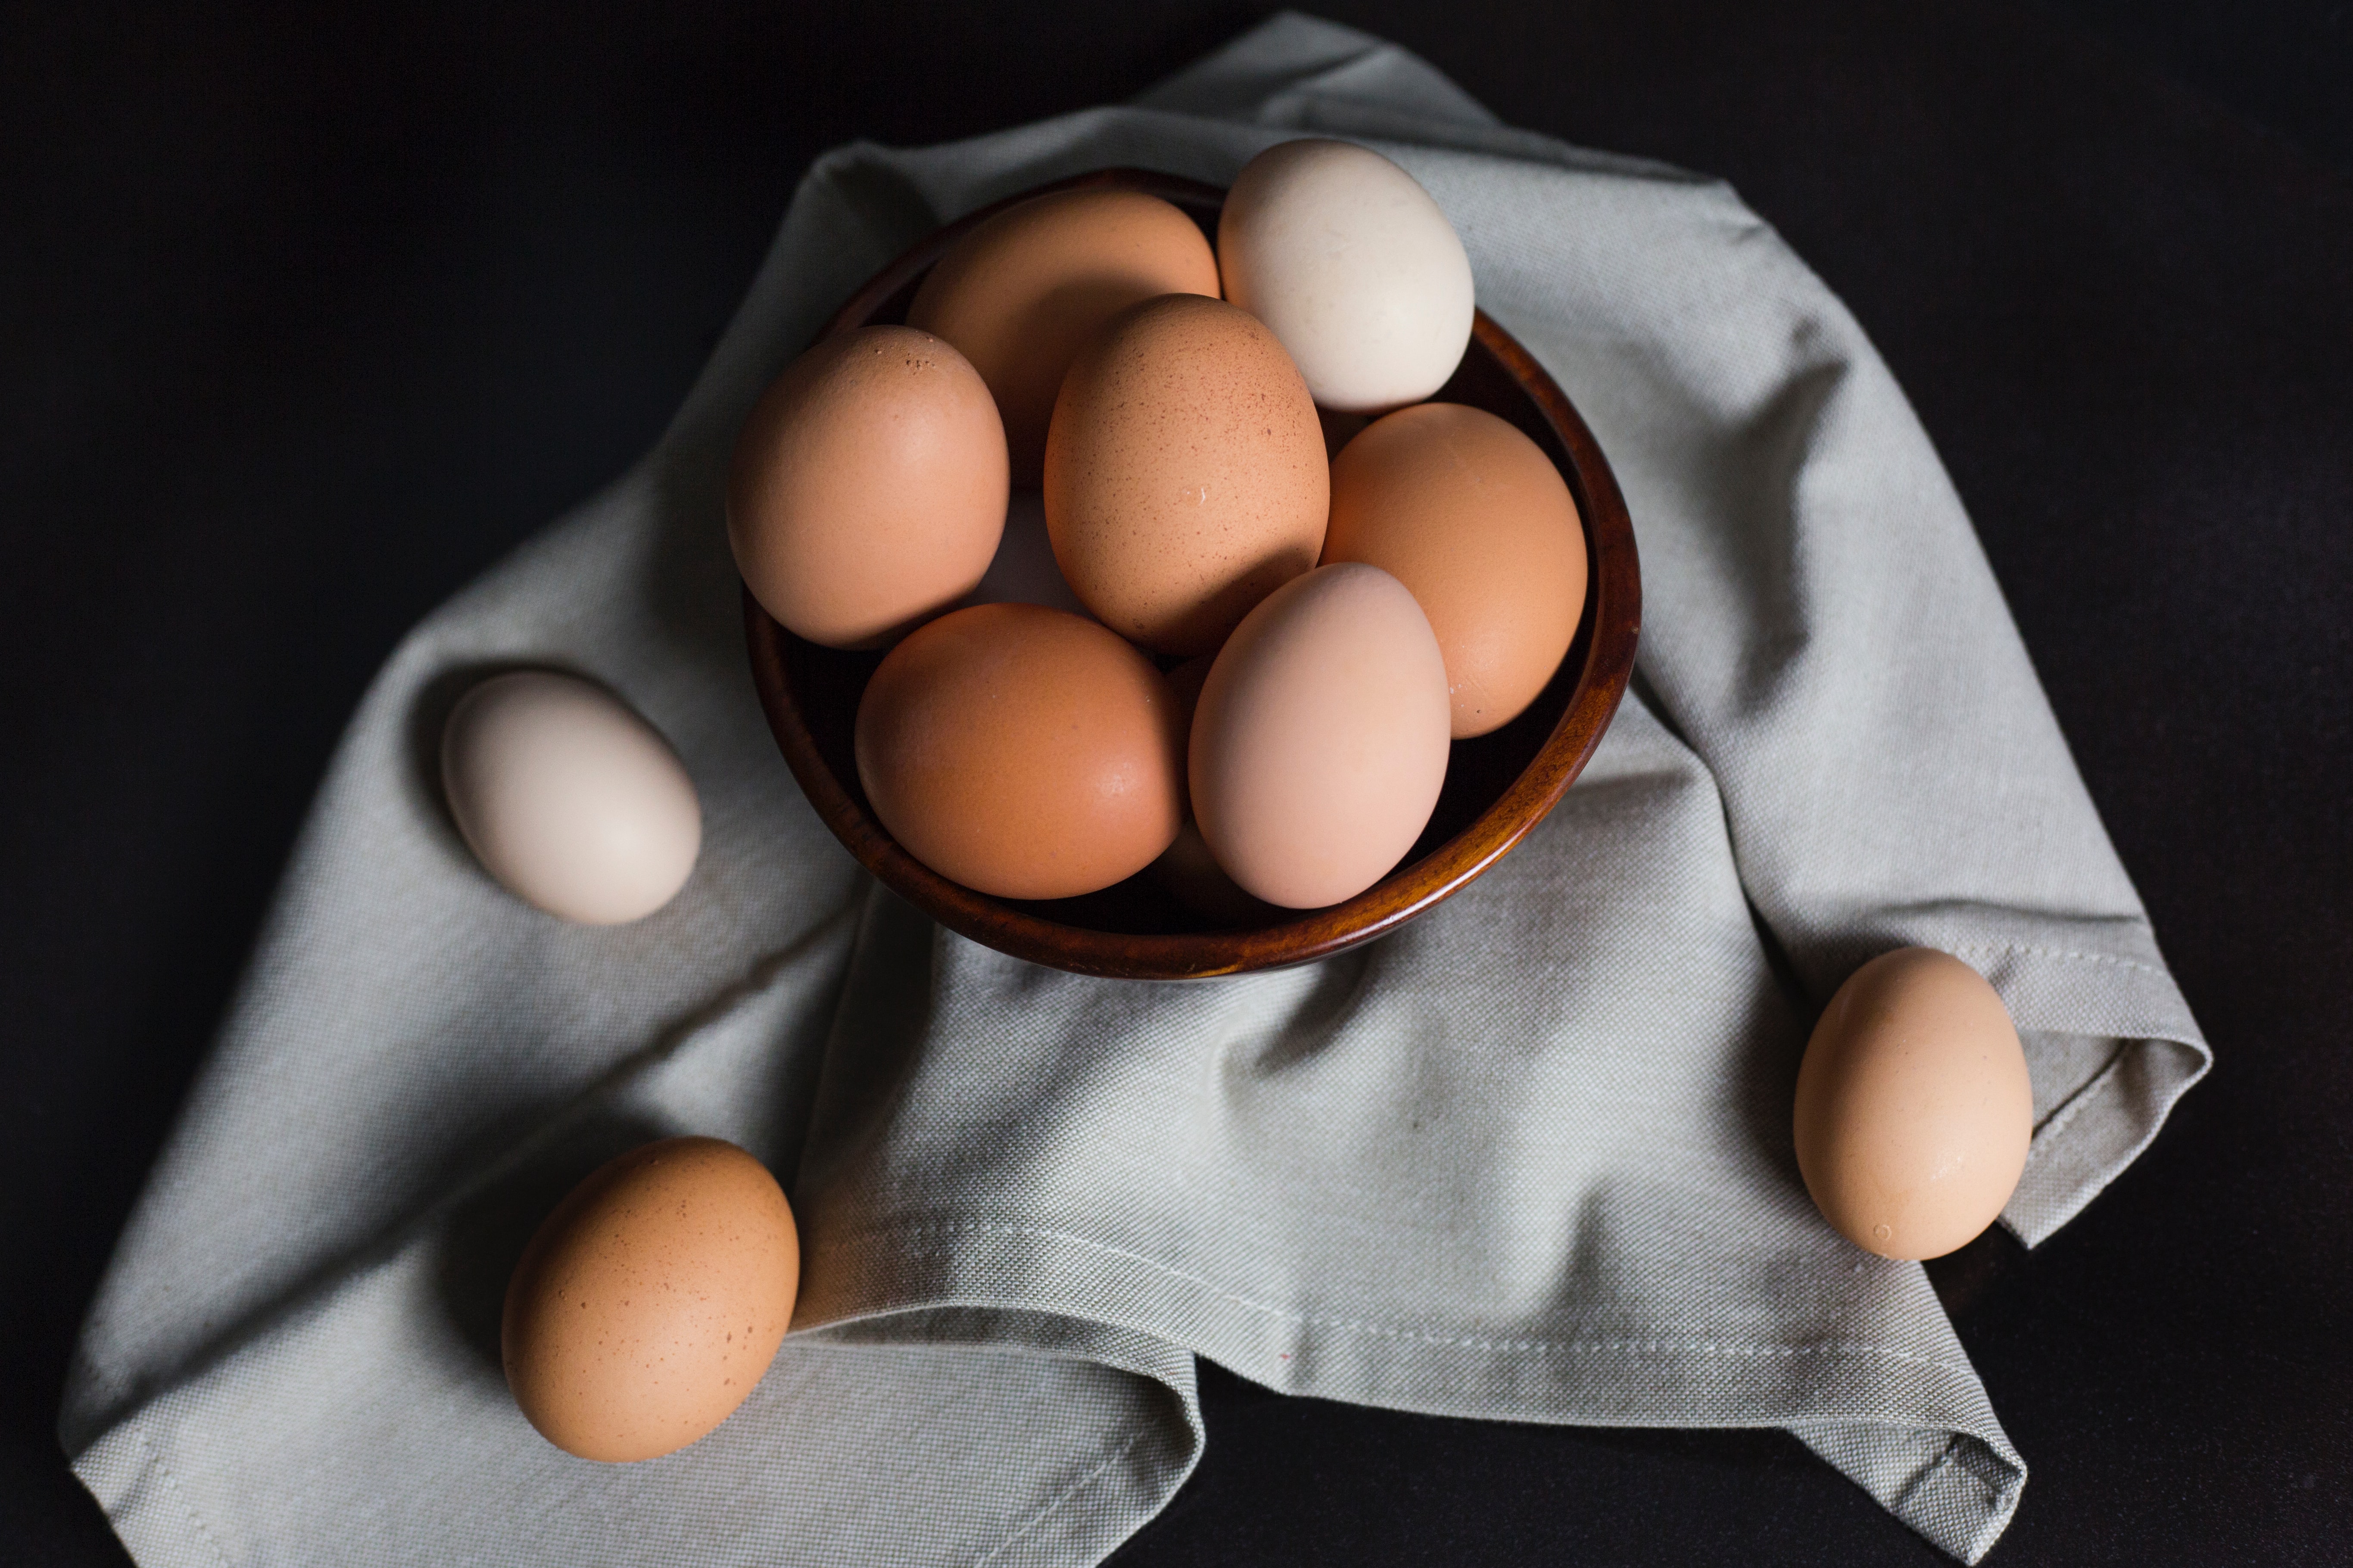 DA LI STE ZNALI? Evo koja je razlika između bijelih i smeđih jaja!